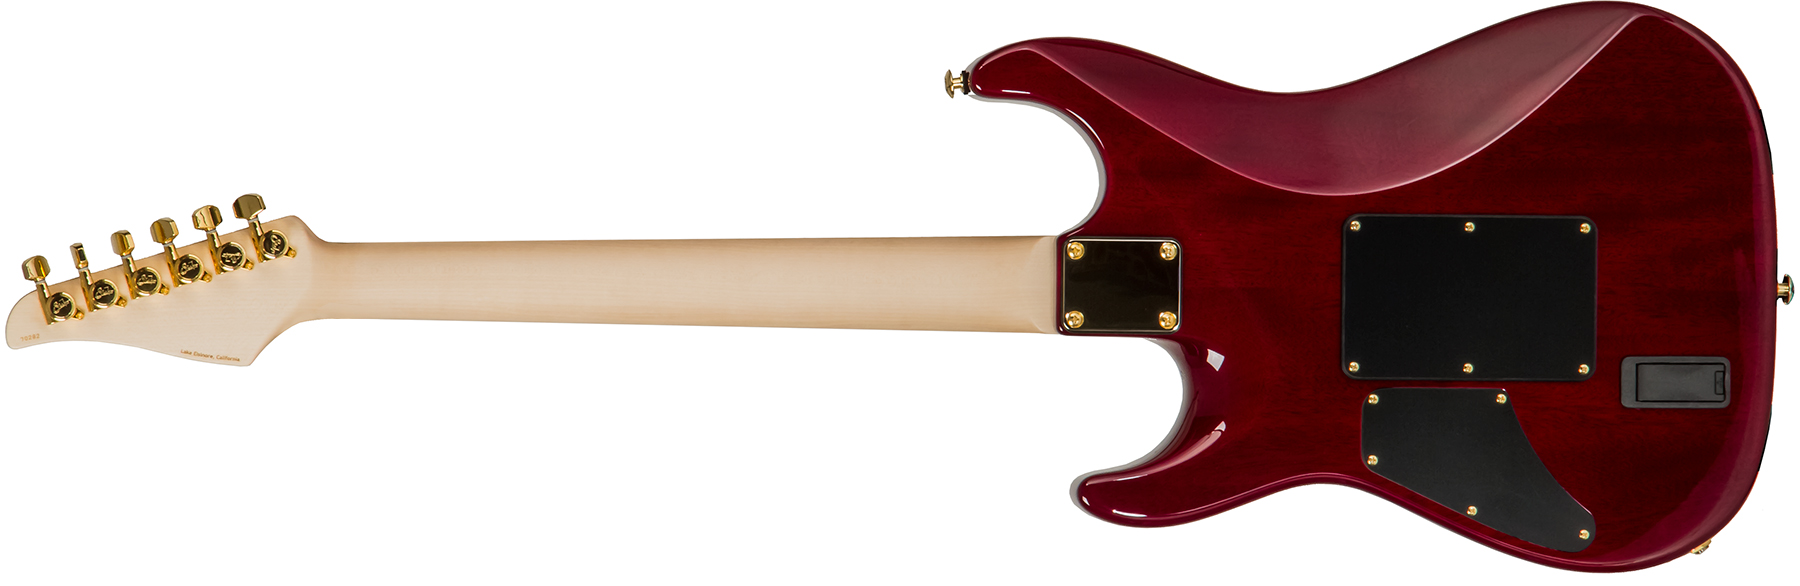 Suhr Standard Legacy 01-ltd-0030 Hss Emg Fr Rw #70282 - Aged Cherry Burst - Elektrische gitaar in Str-vorm - Variation 1